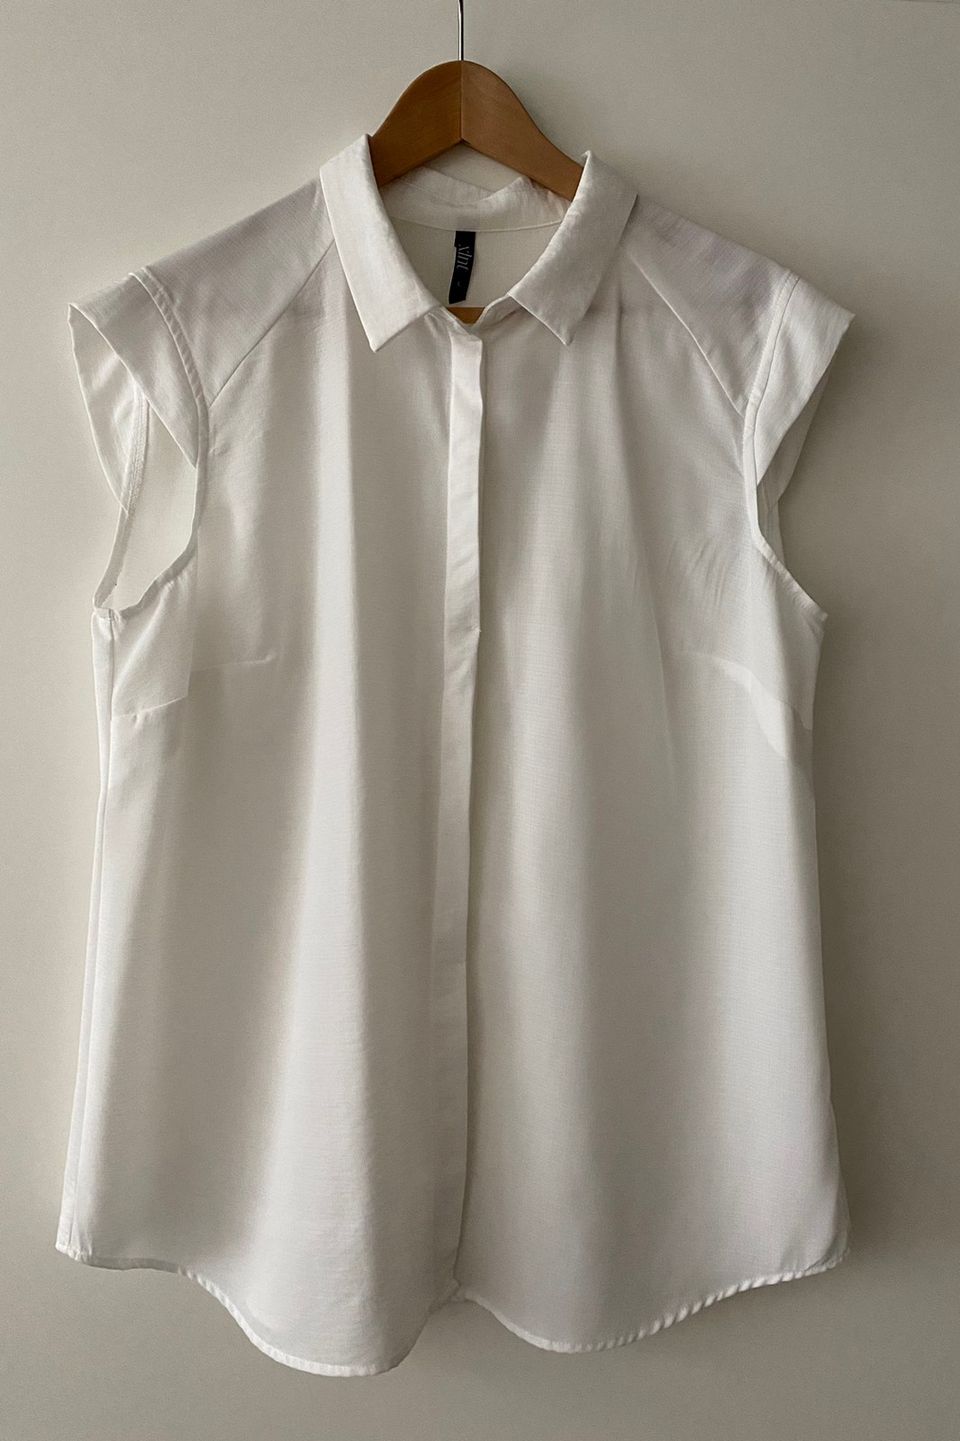 Valkoinen hihaton paita